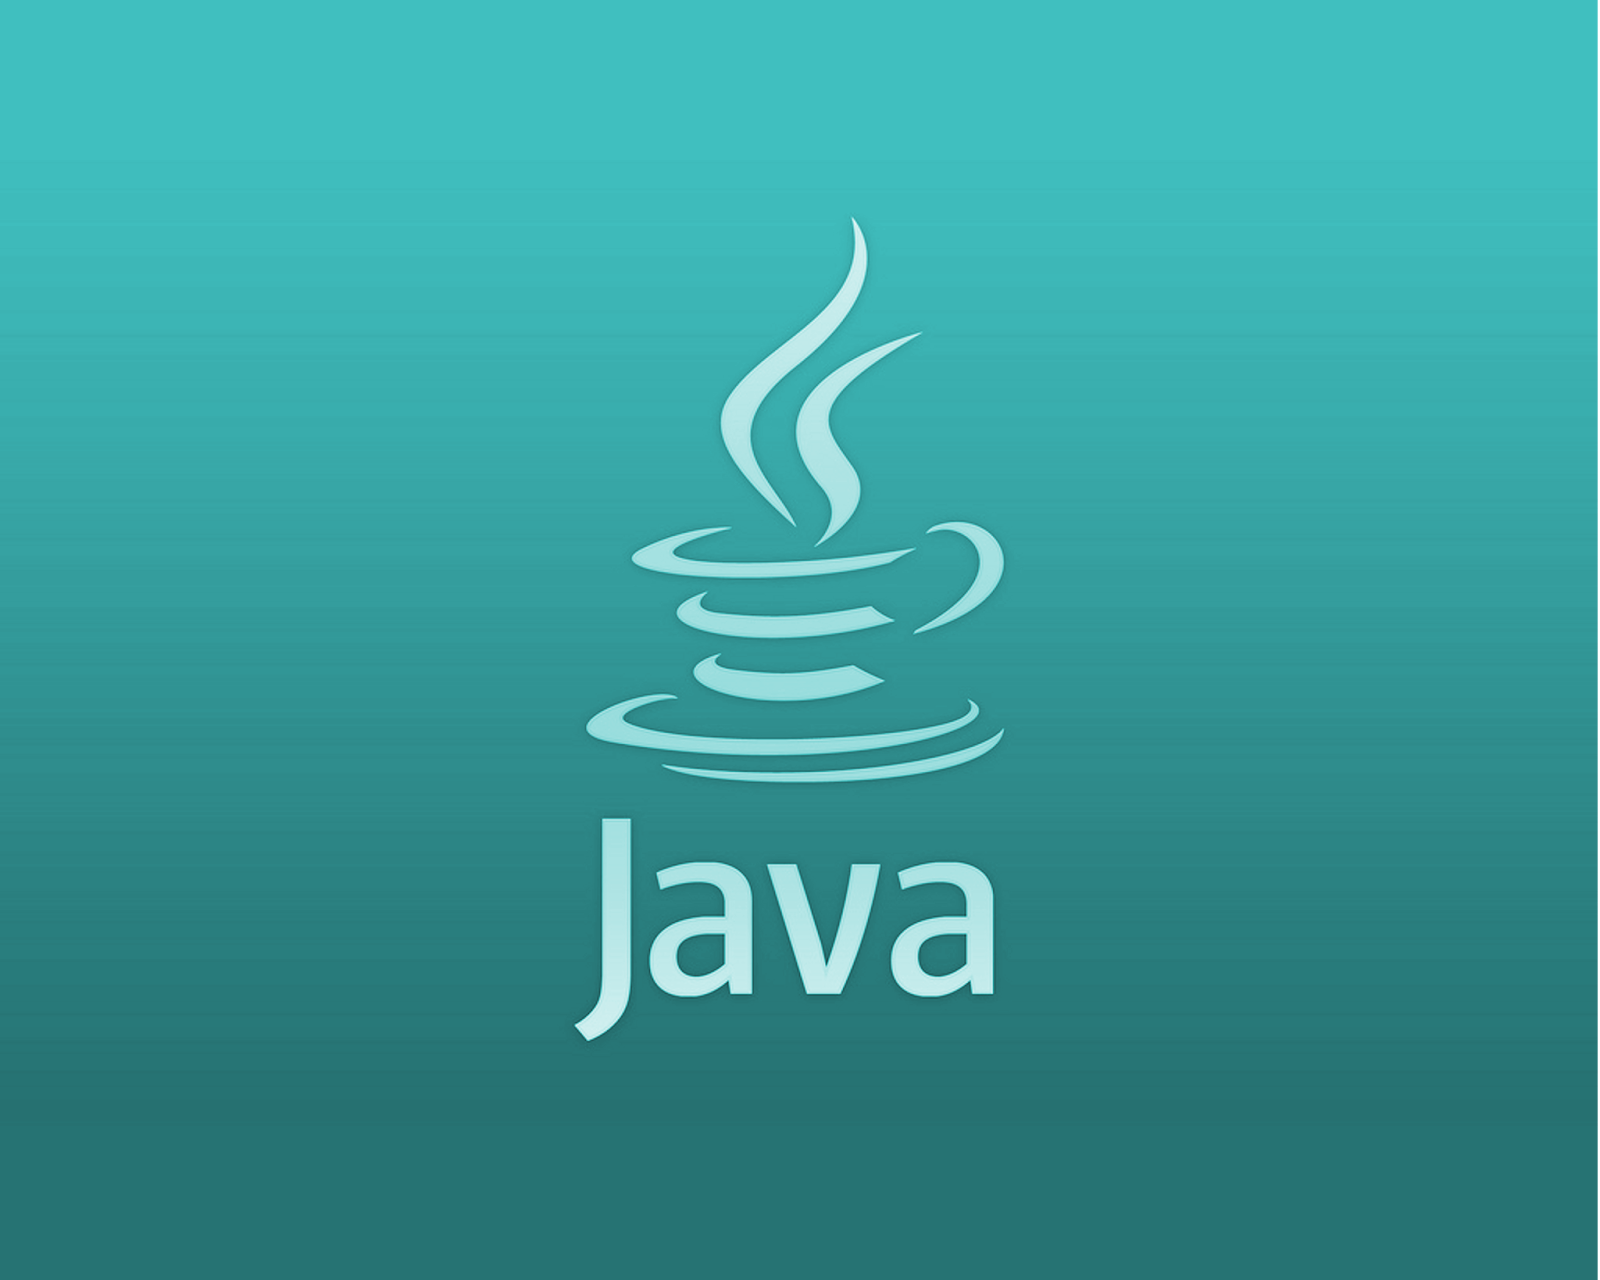 Язык программирования java. Java язык программирования логотип. Жавалоготип язык программирования. Иконка java. Картинка java